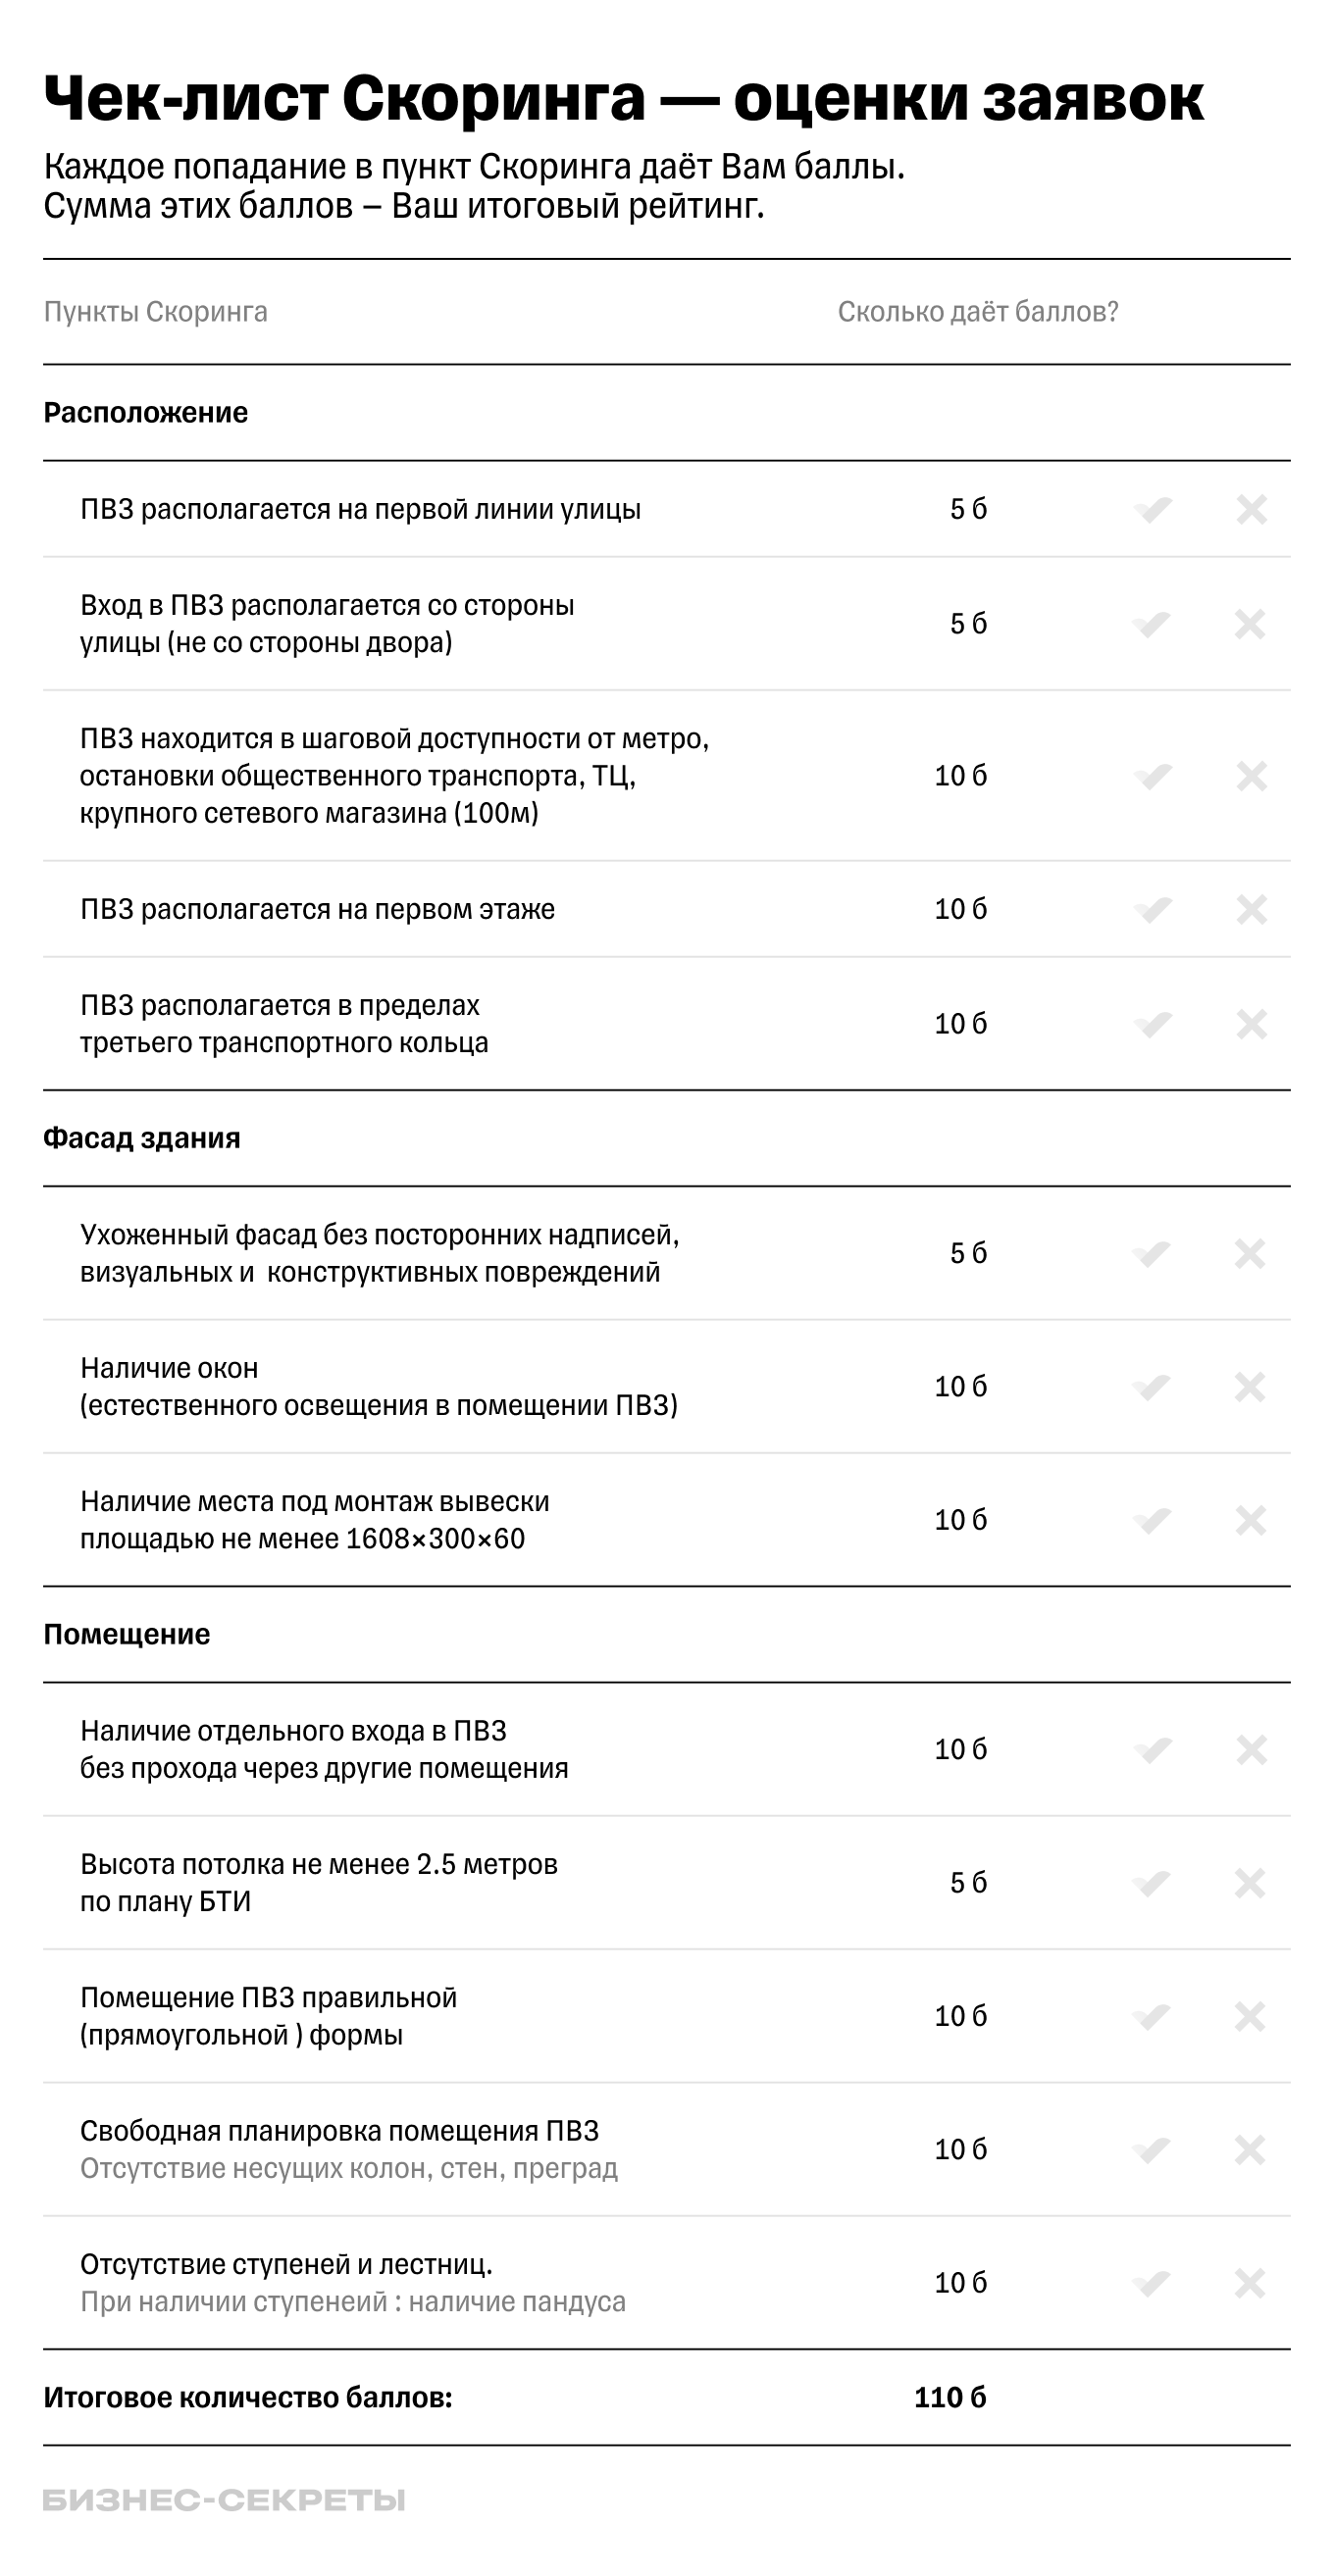 Система оценки помещения для ПВЗ Яндекса